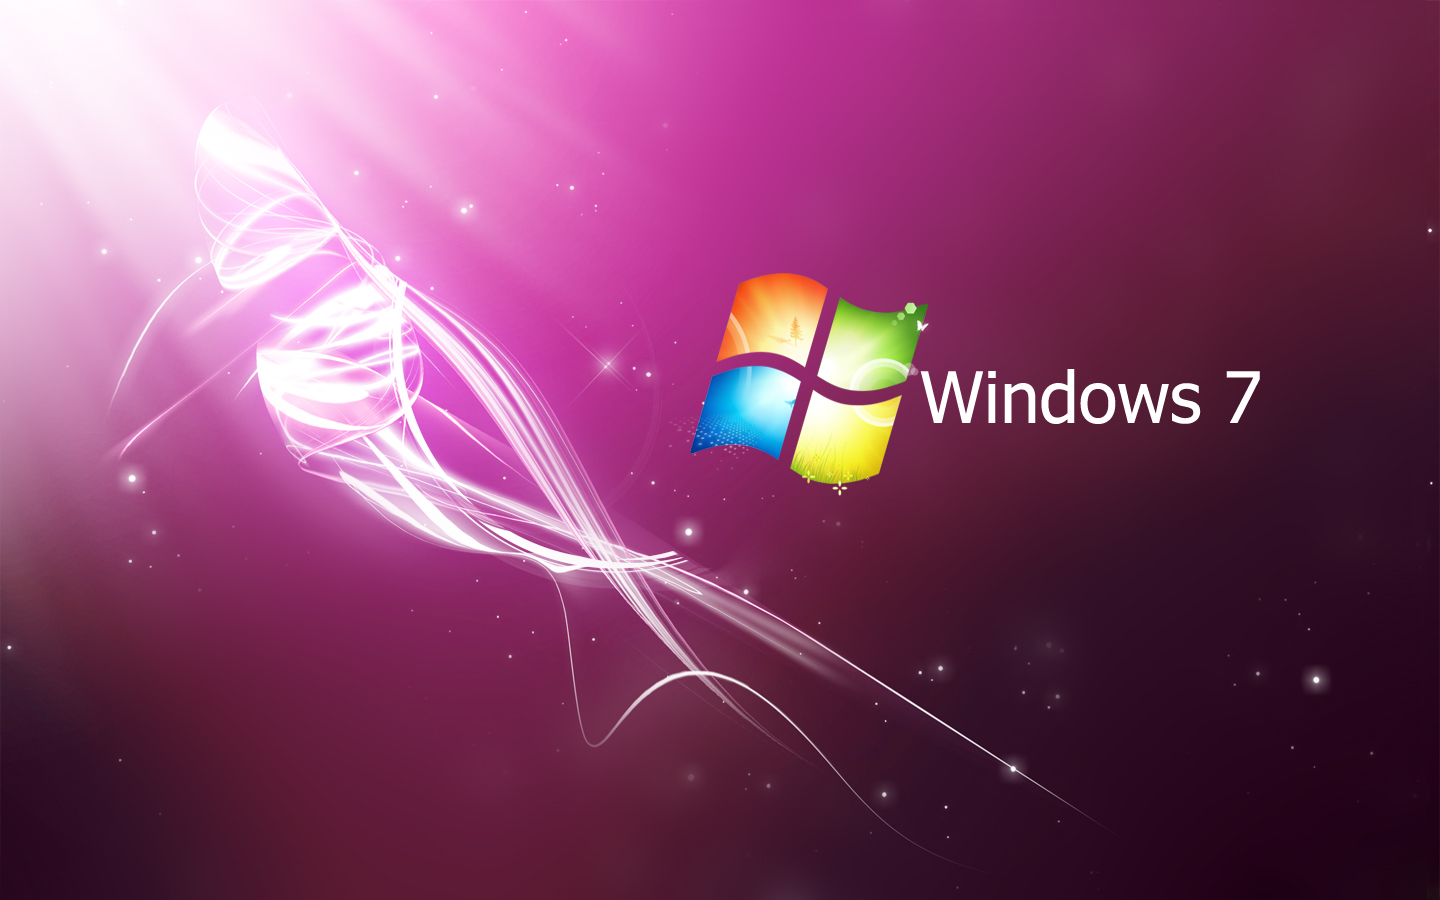 Cập nhật và đổi hình nền laptop đẹp cho Windows 7, 8.1 và 10